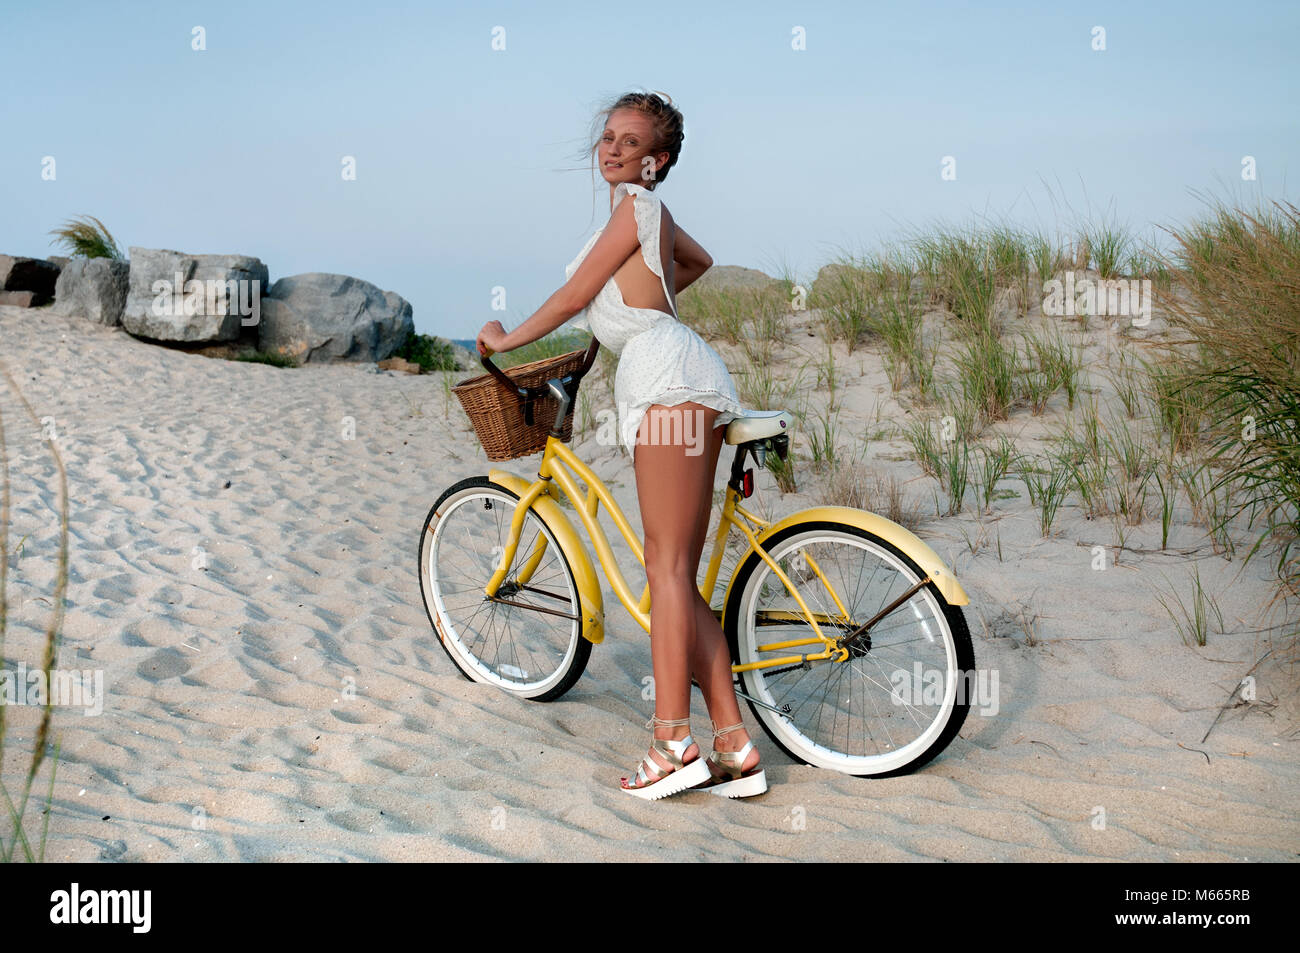 Schöne Frau mit dem Fahrrad auf den Strand Sommer Urlaub Stockfotografie Alamy